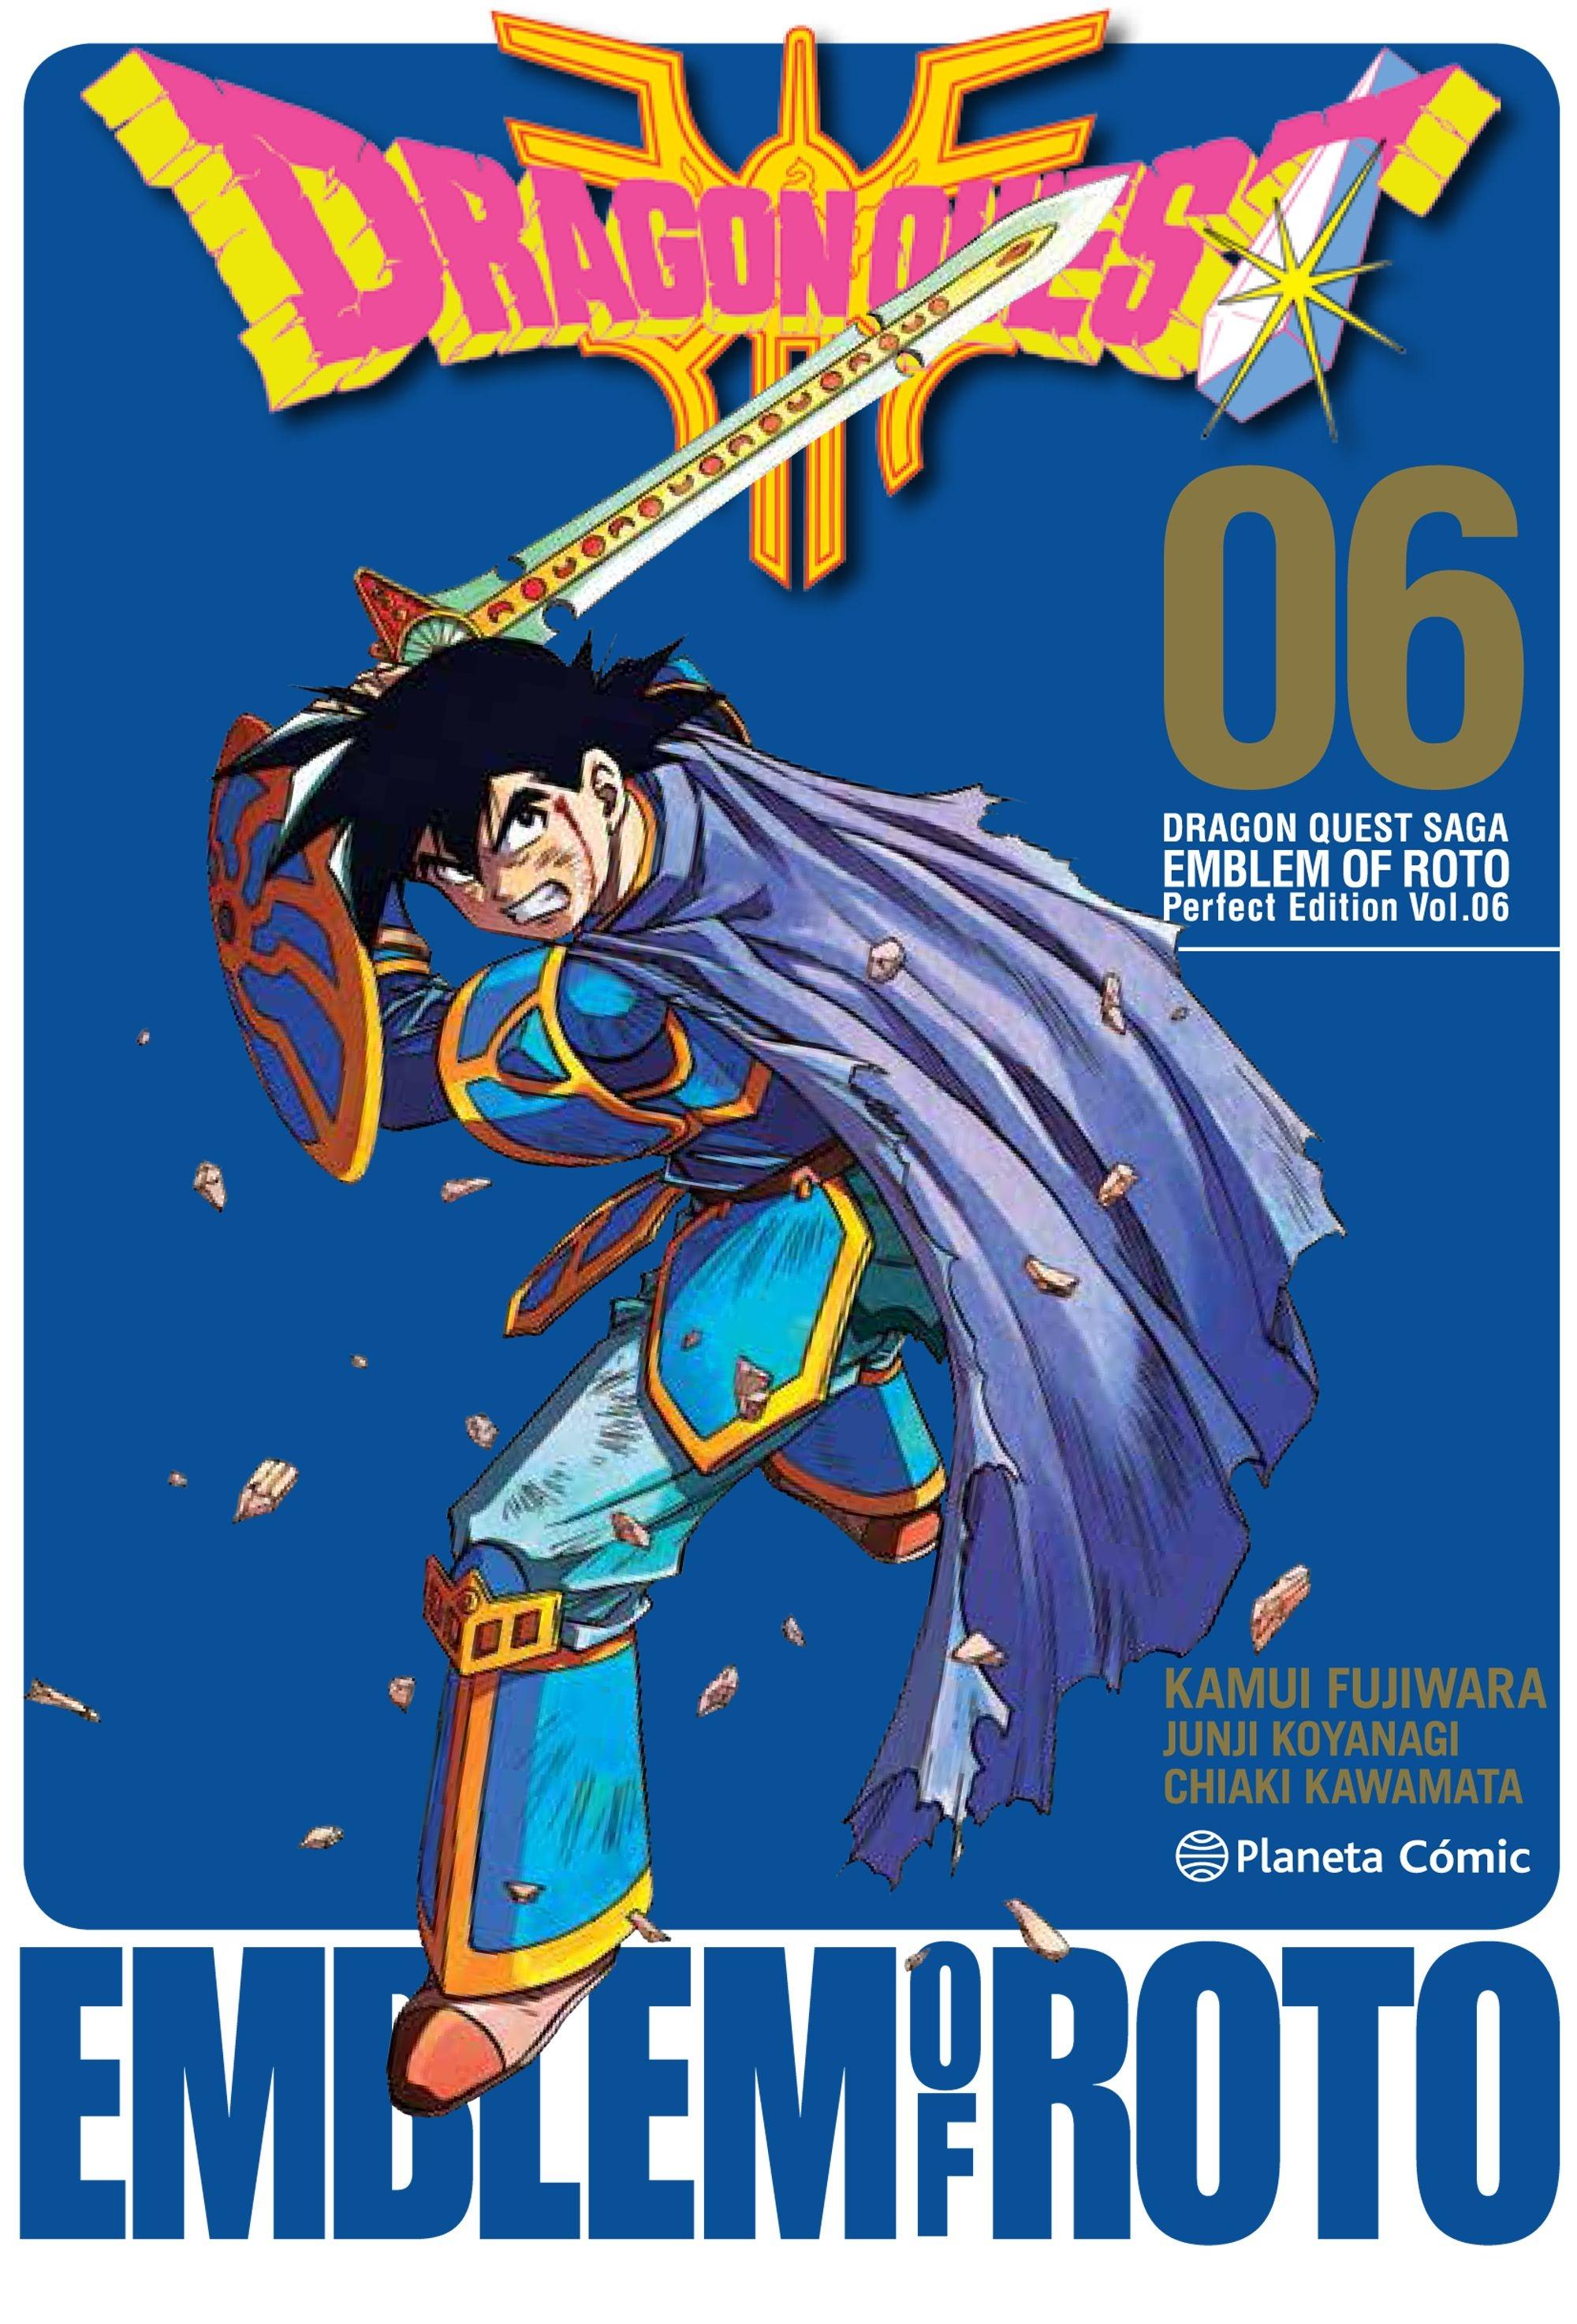 Dragon Quest Saga | Emblem Of Roto Nº 06/15 "Perfect Edition Vol. 06". 